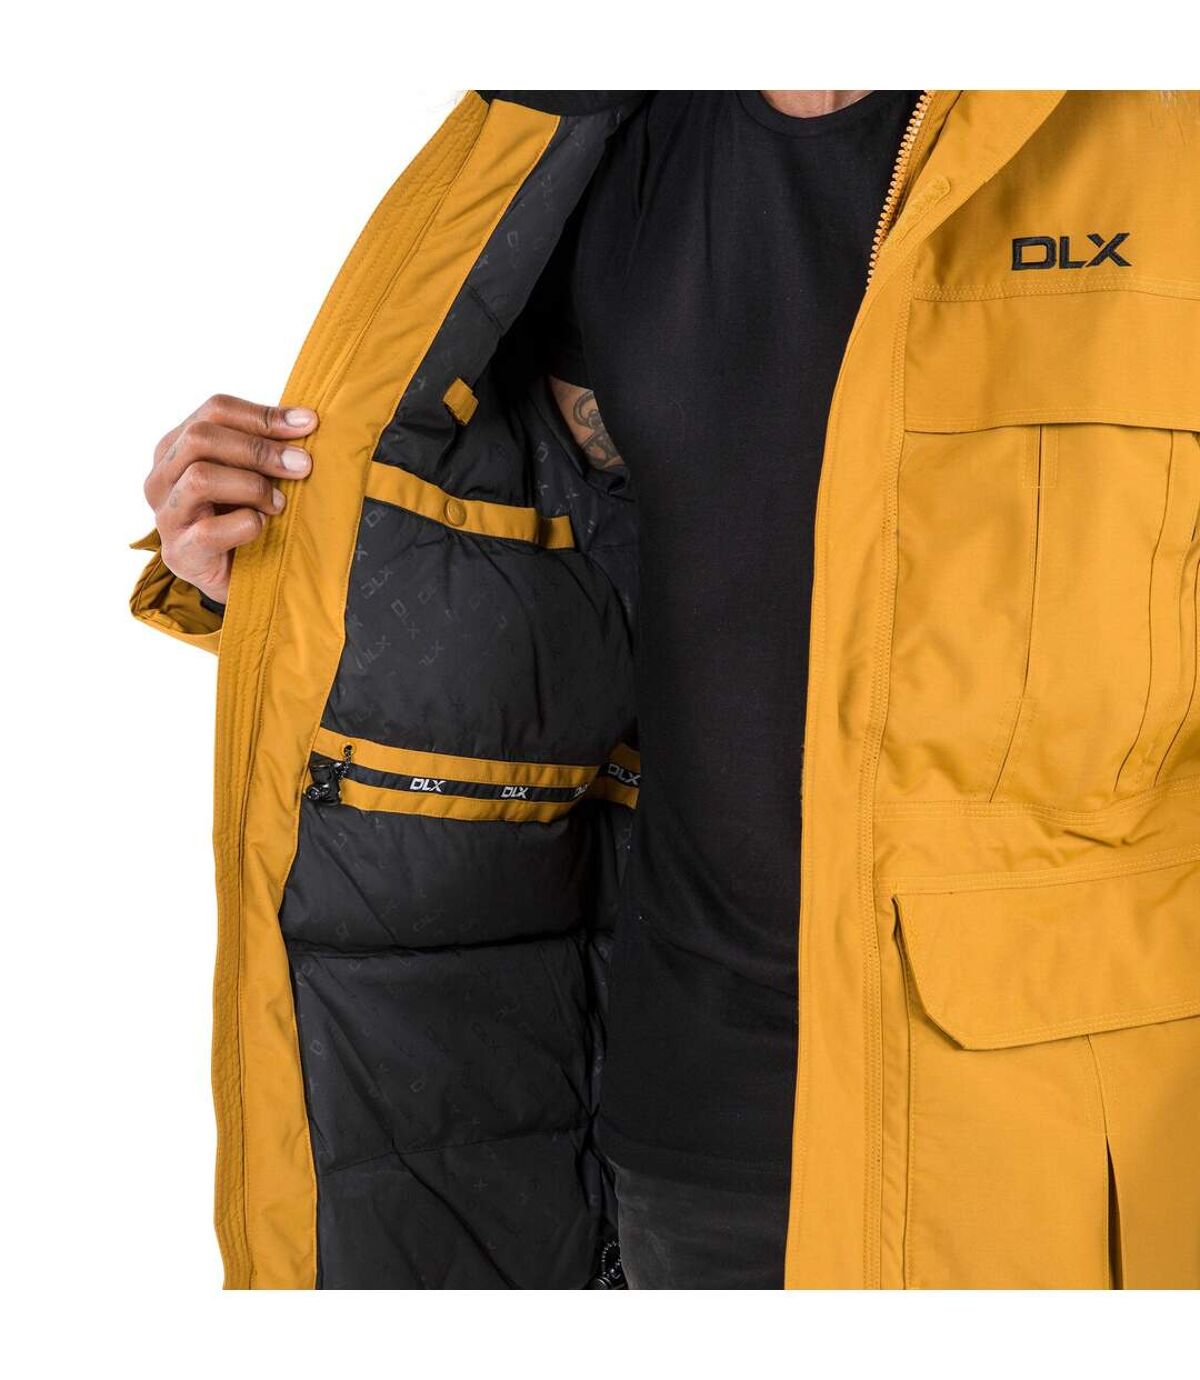 Trespass Mens Highland Waterproof Parka Jacket (Golden Brown) - UTTP1304